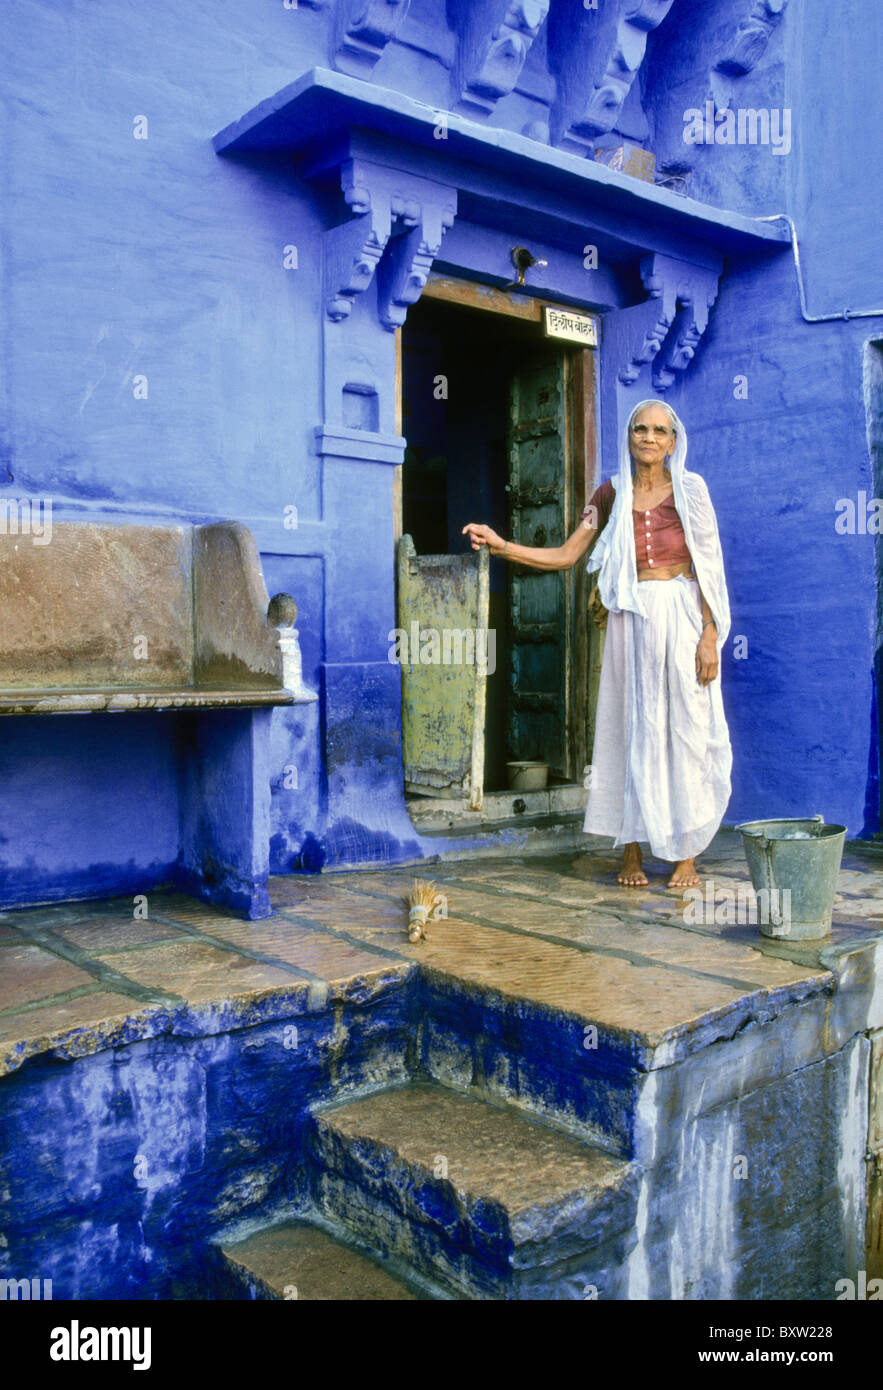 Femme sur le porche d'une maison dans la ville bleue, Jodhpur, Rajasthan, India Banque D'Images